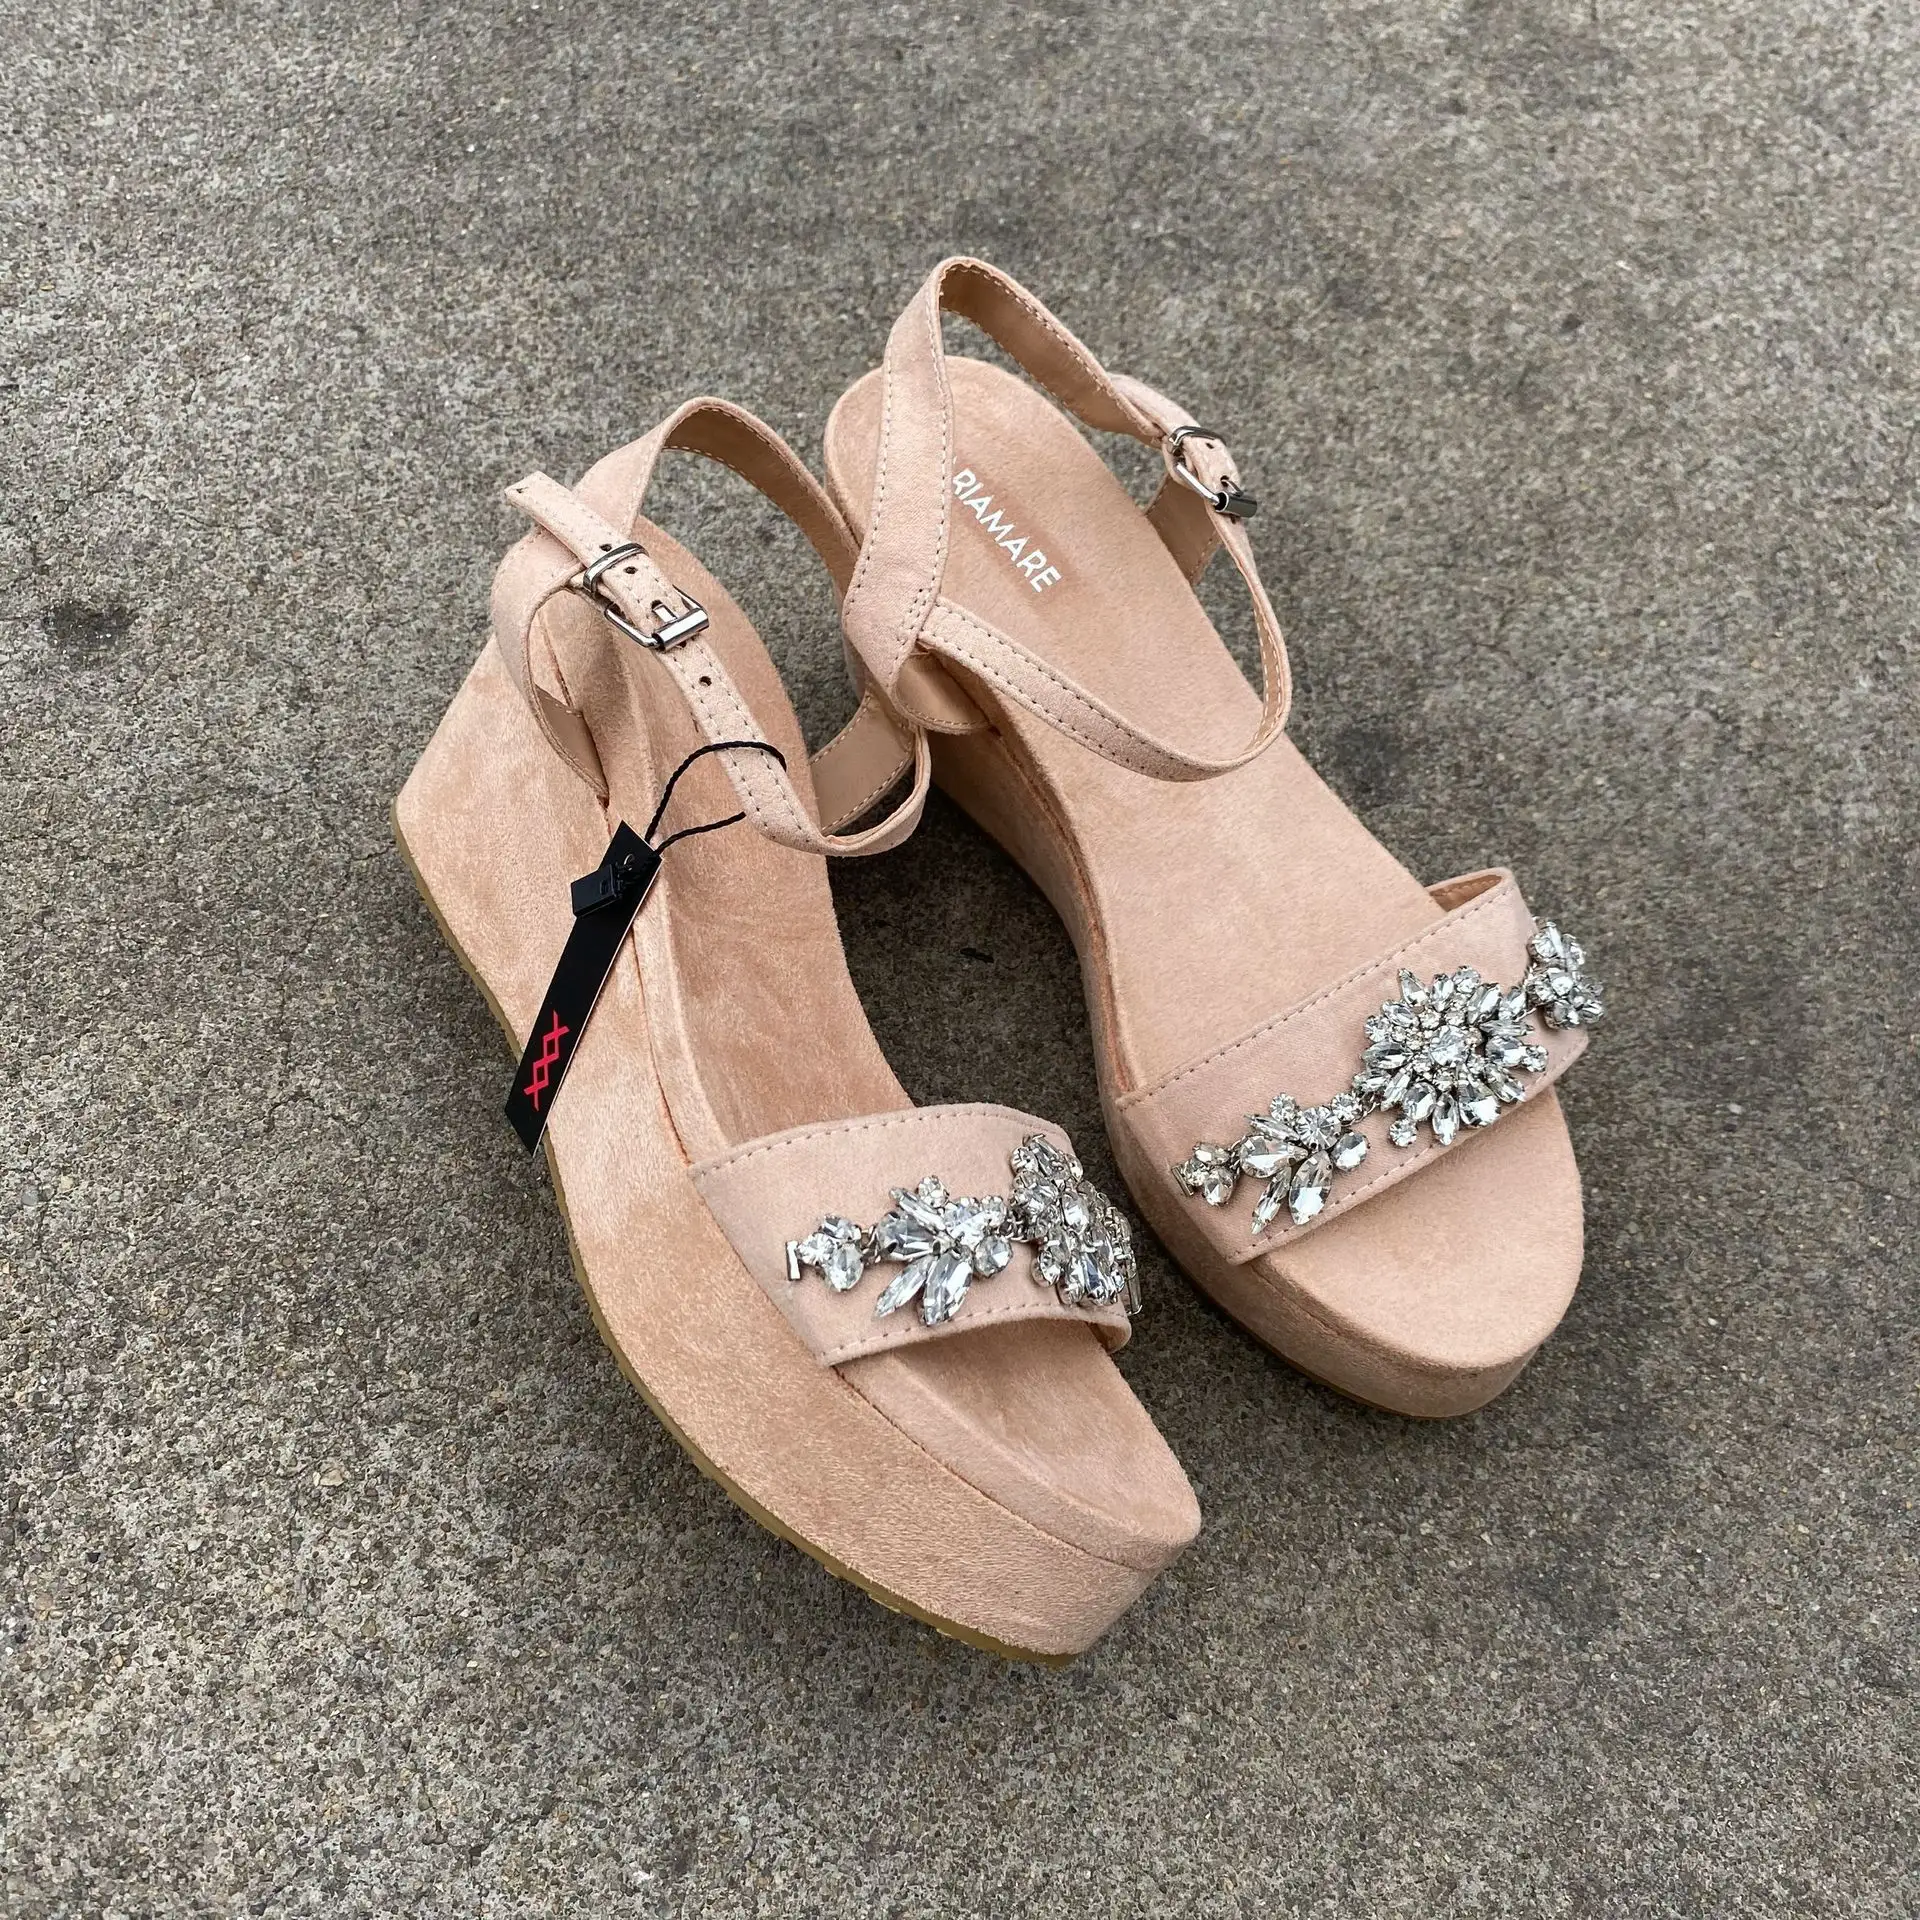 Commercio all'ingrosso di fabbrica nuovo stile 2020 scarpe estive per donna suole spesse sandali antiscivolo sandali con borchie tacco medio